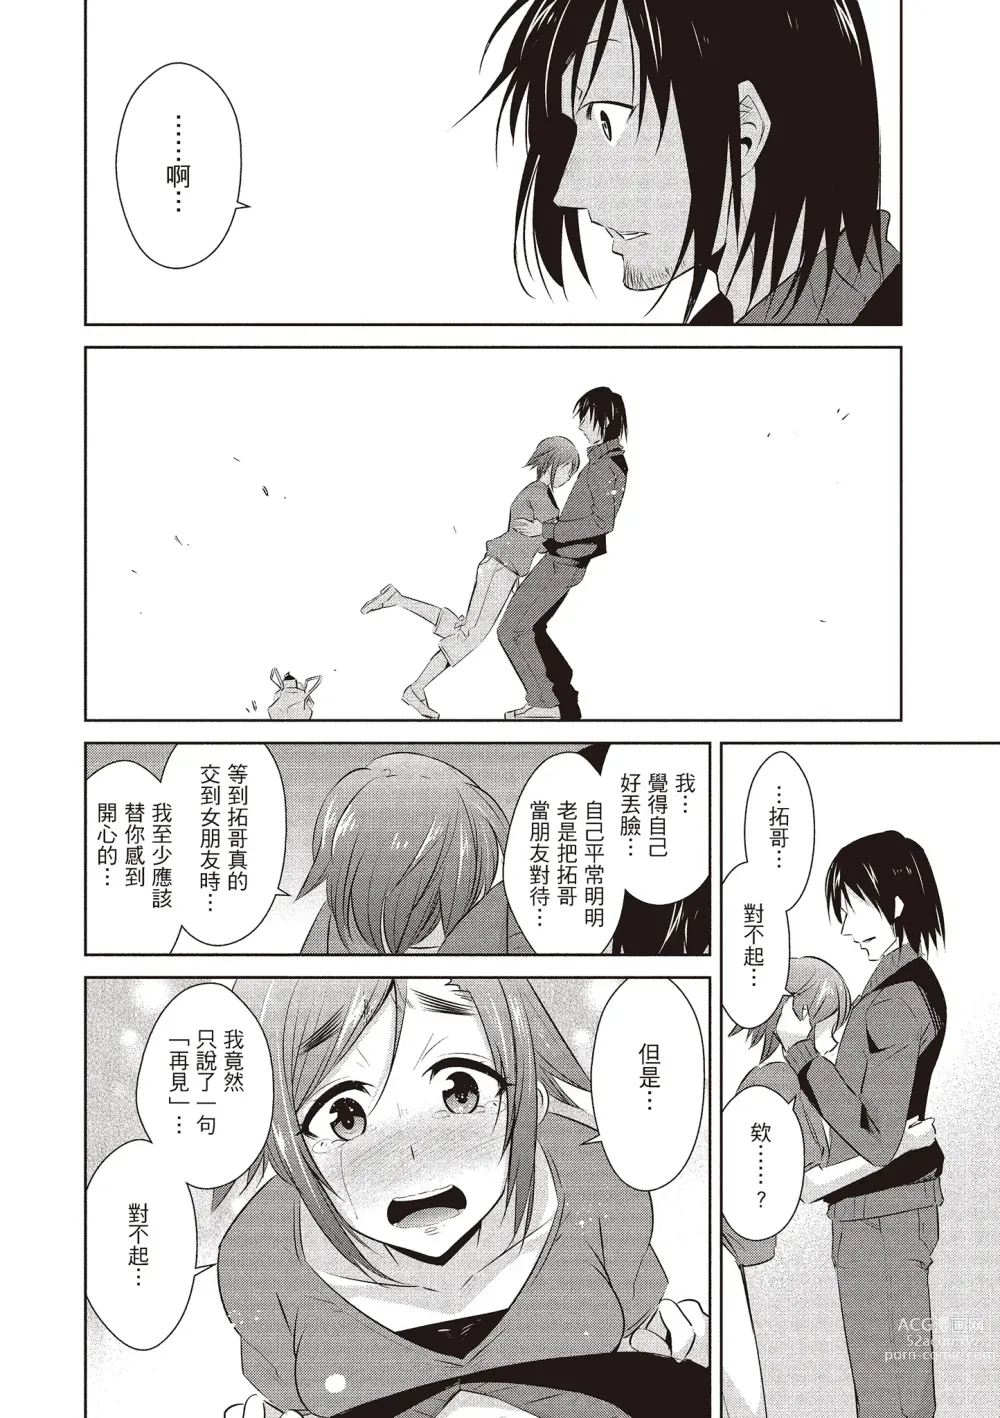 Page 172 of manga 朋友間的淫事